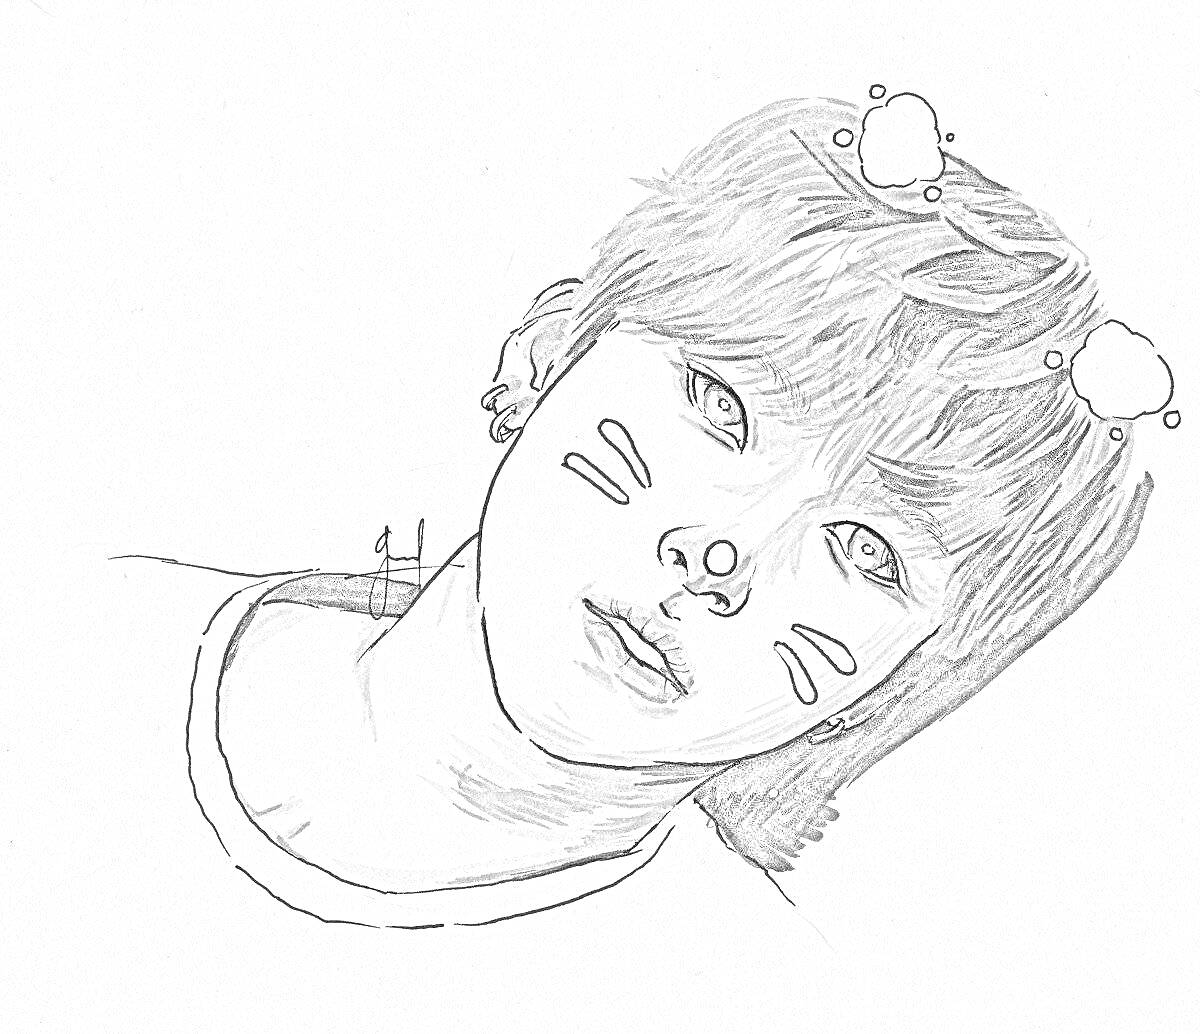 Раскраска Рисунок головы молодого человека с ушками и whisker-like полосами на щеках